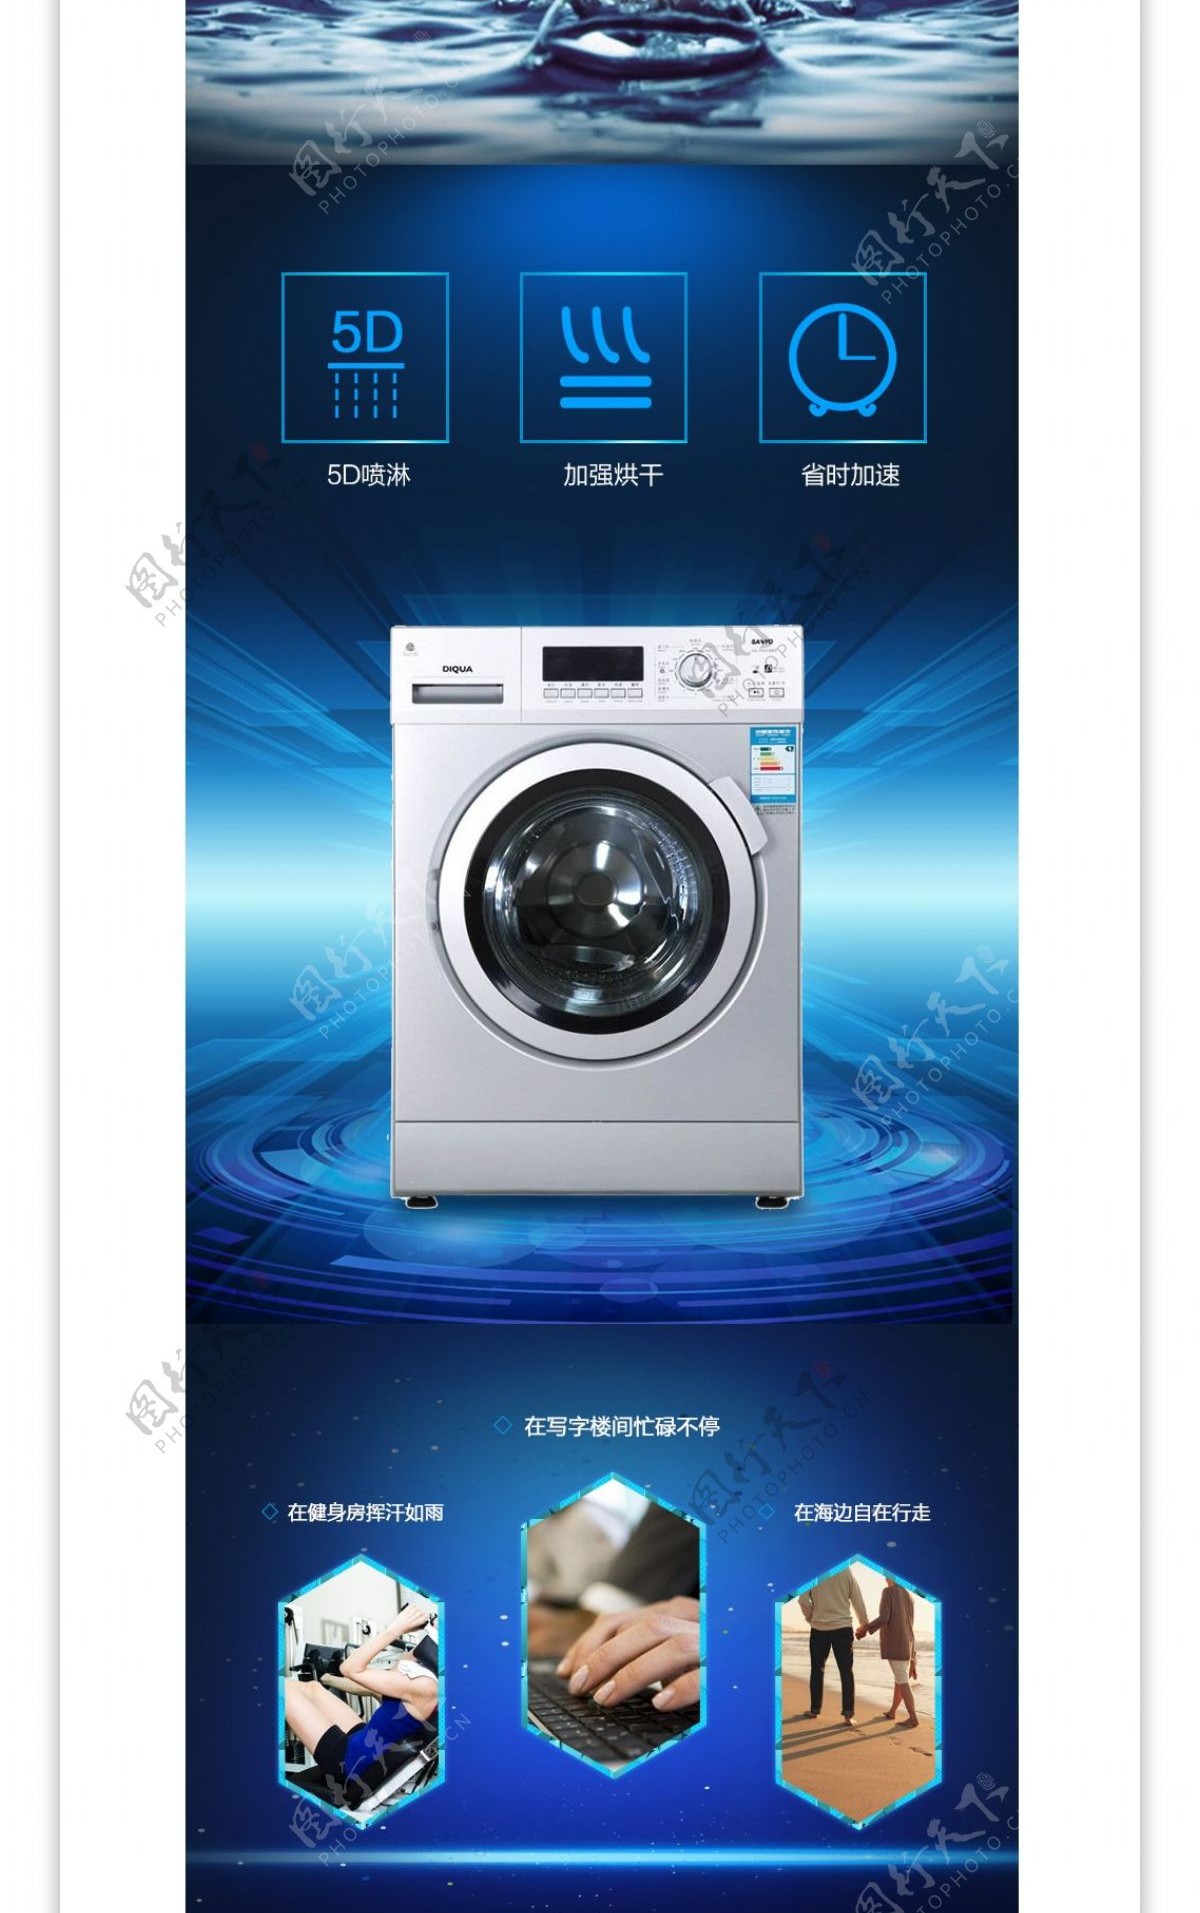 电器焕新新款洗衣机淘宝详情页